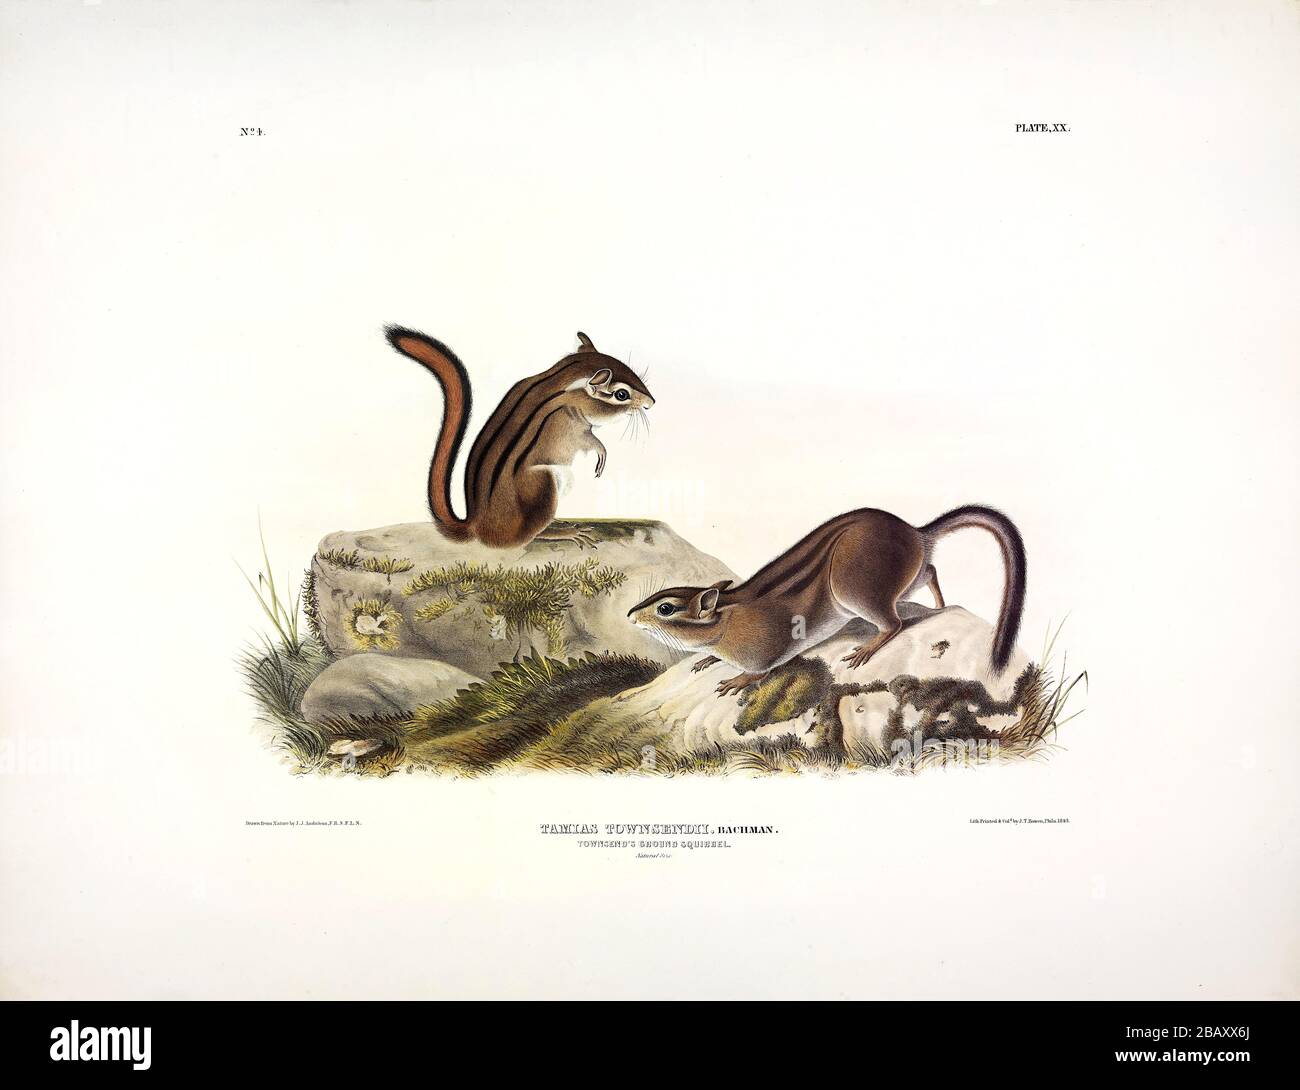 Plaque 20 Townsend's Ground Squirrel de la viviviparous QUADRUPEDS d'Amérique du Nord, John James Audubon, image modifiée de très haute résolution et de qualité Banque D'Images